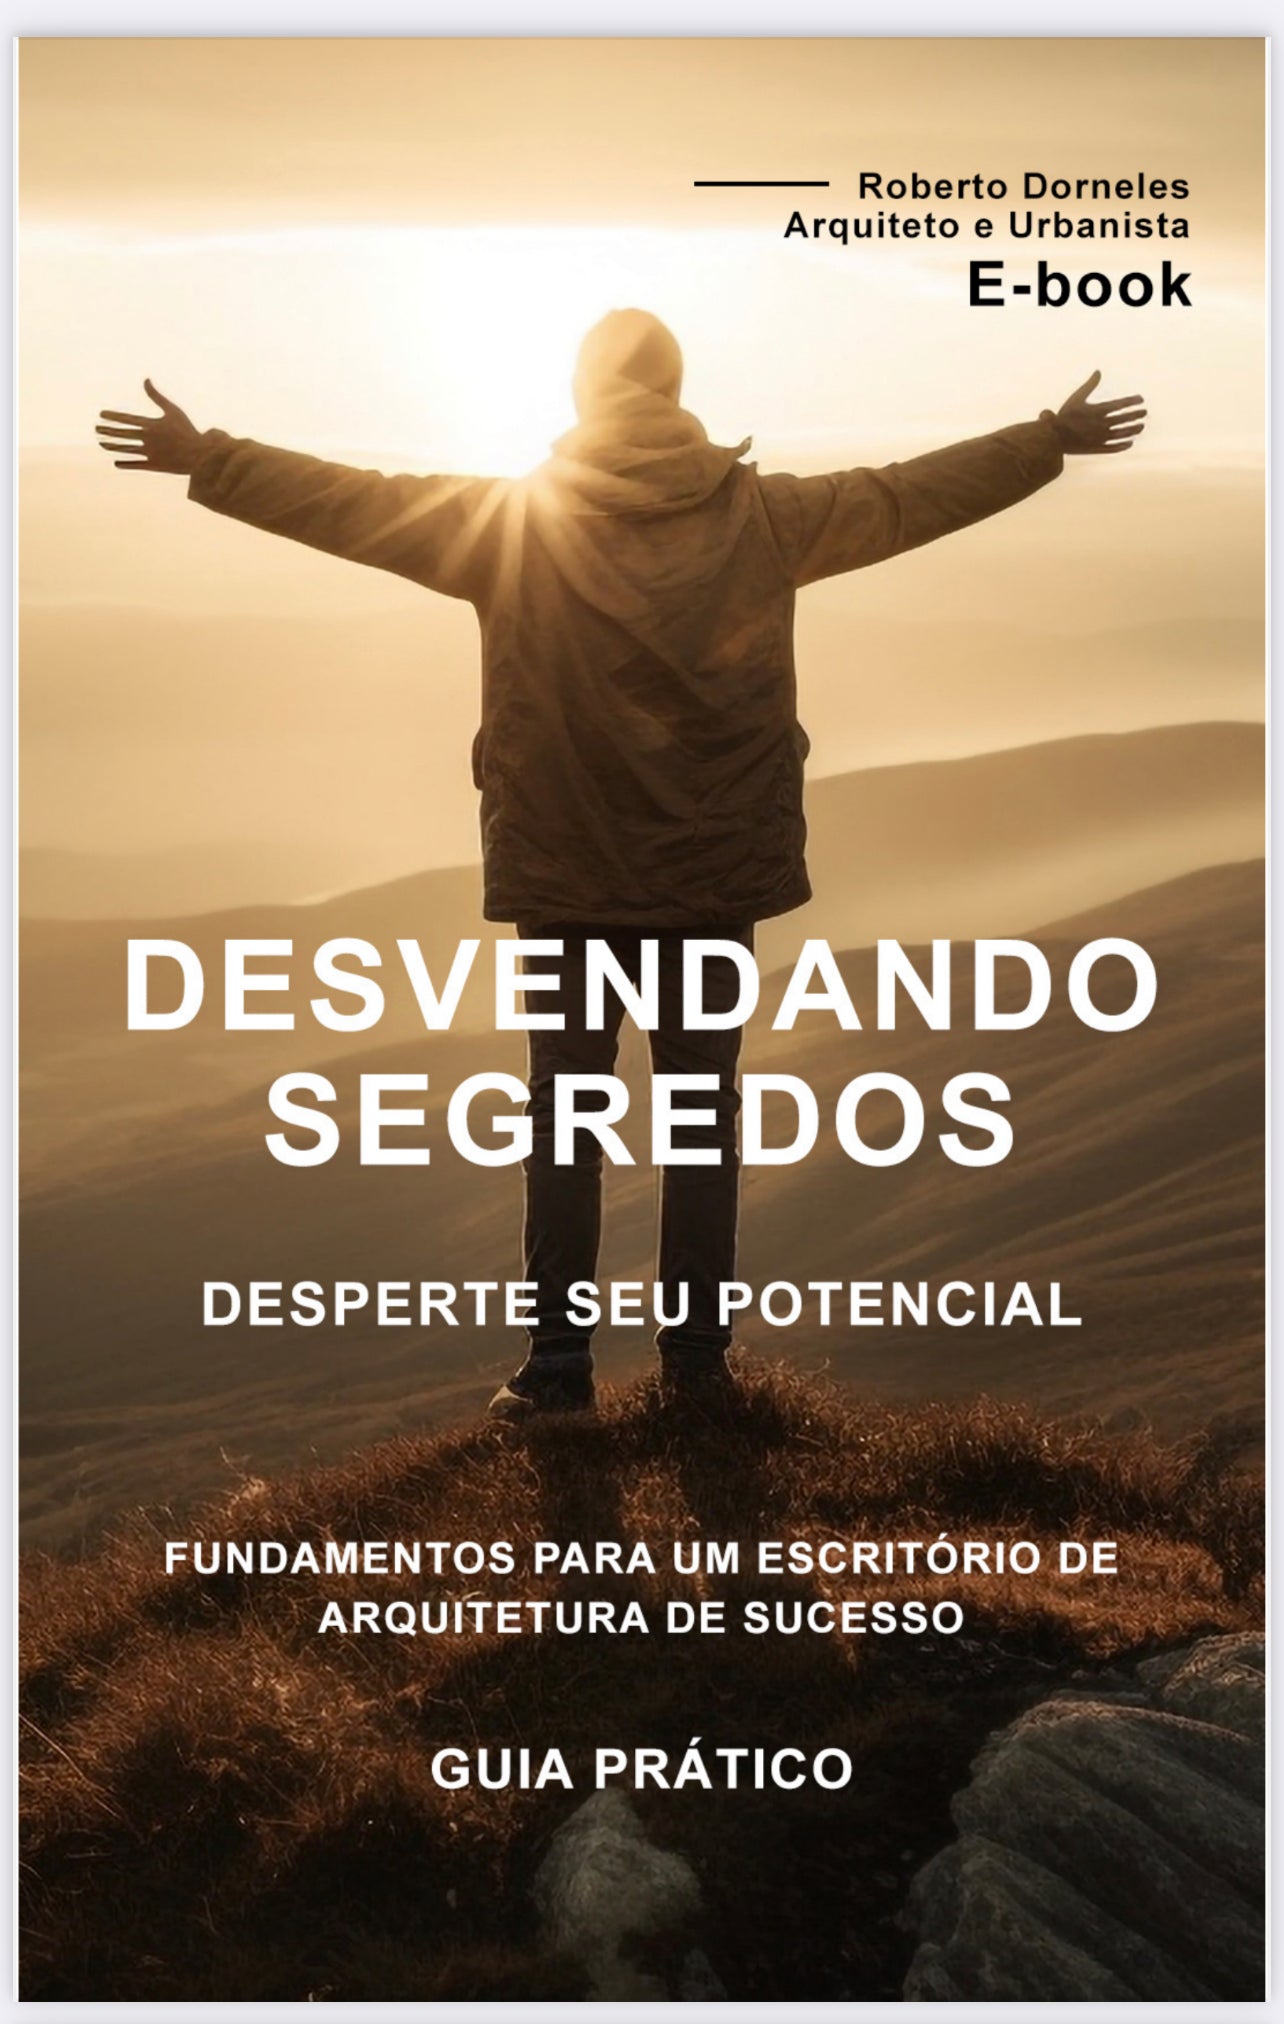 E-book - DESVENDANDO SEGREDOS